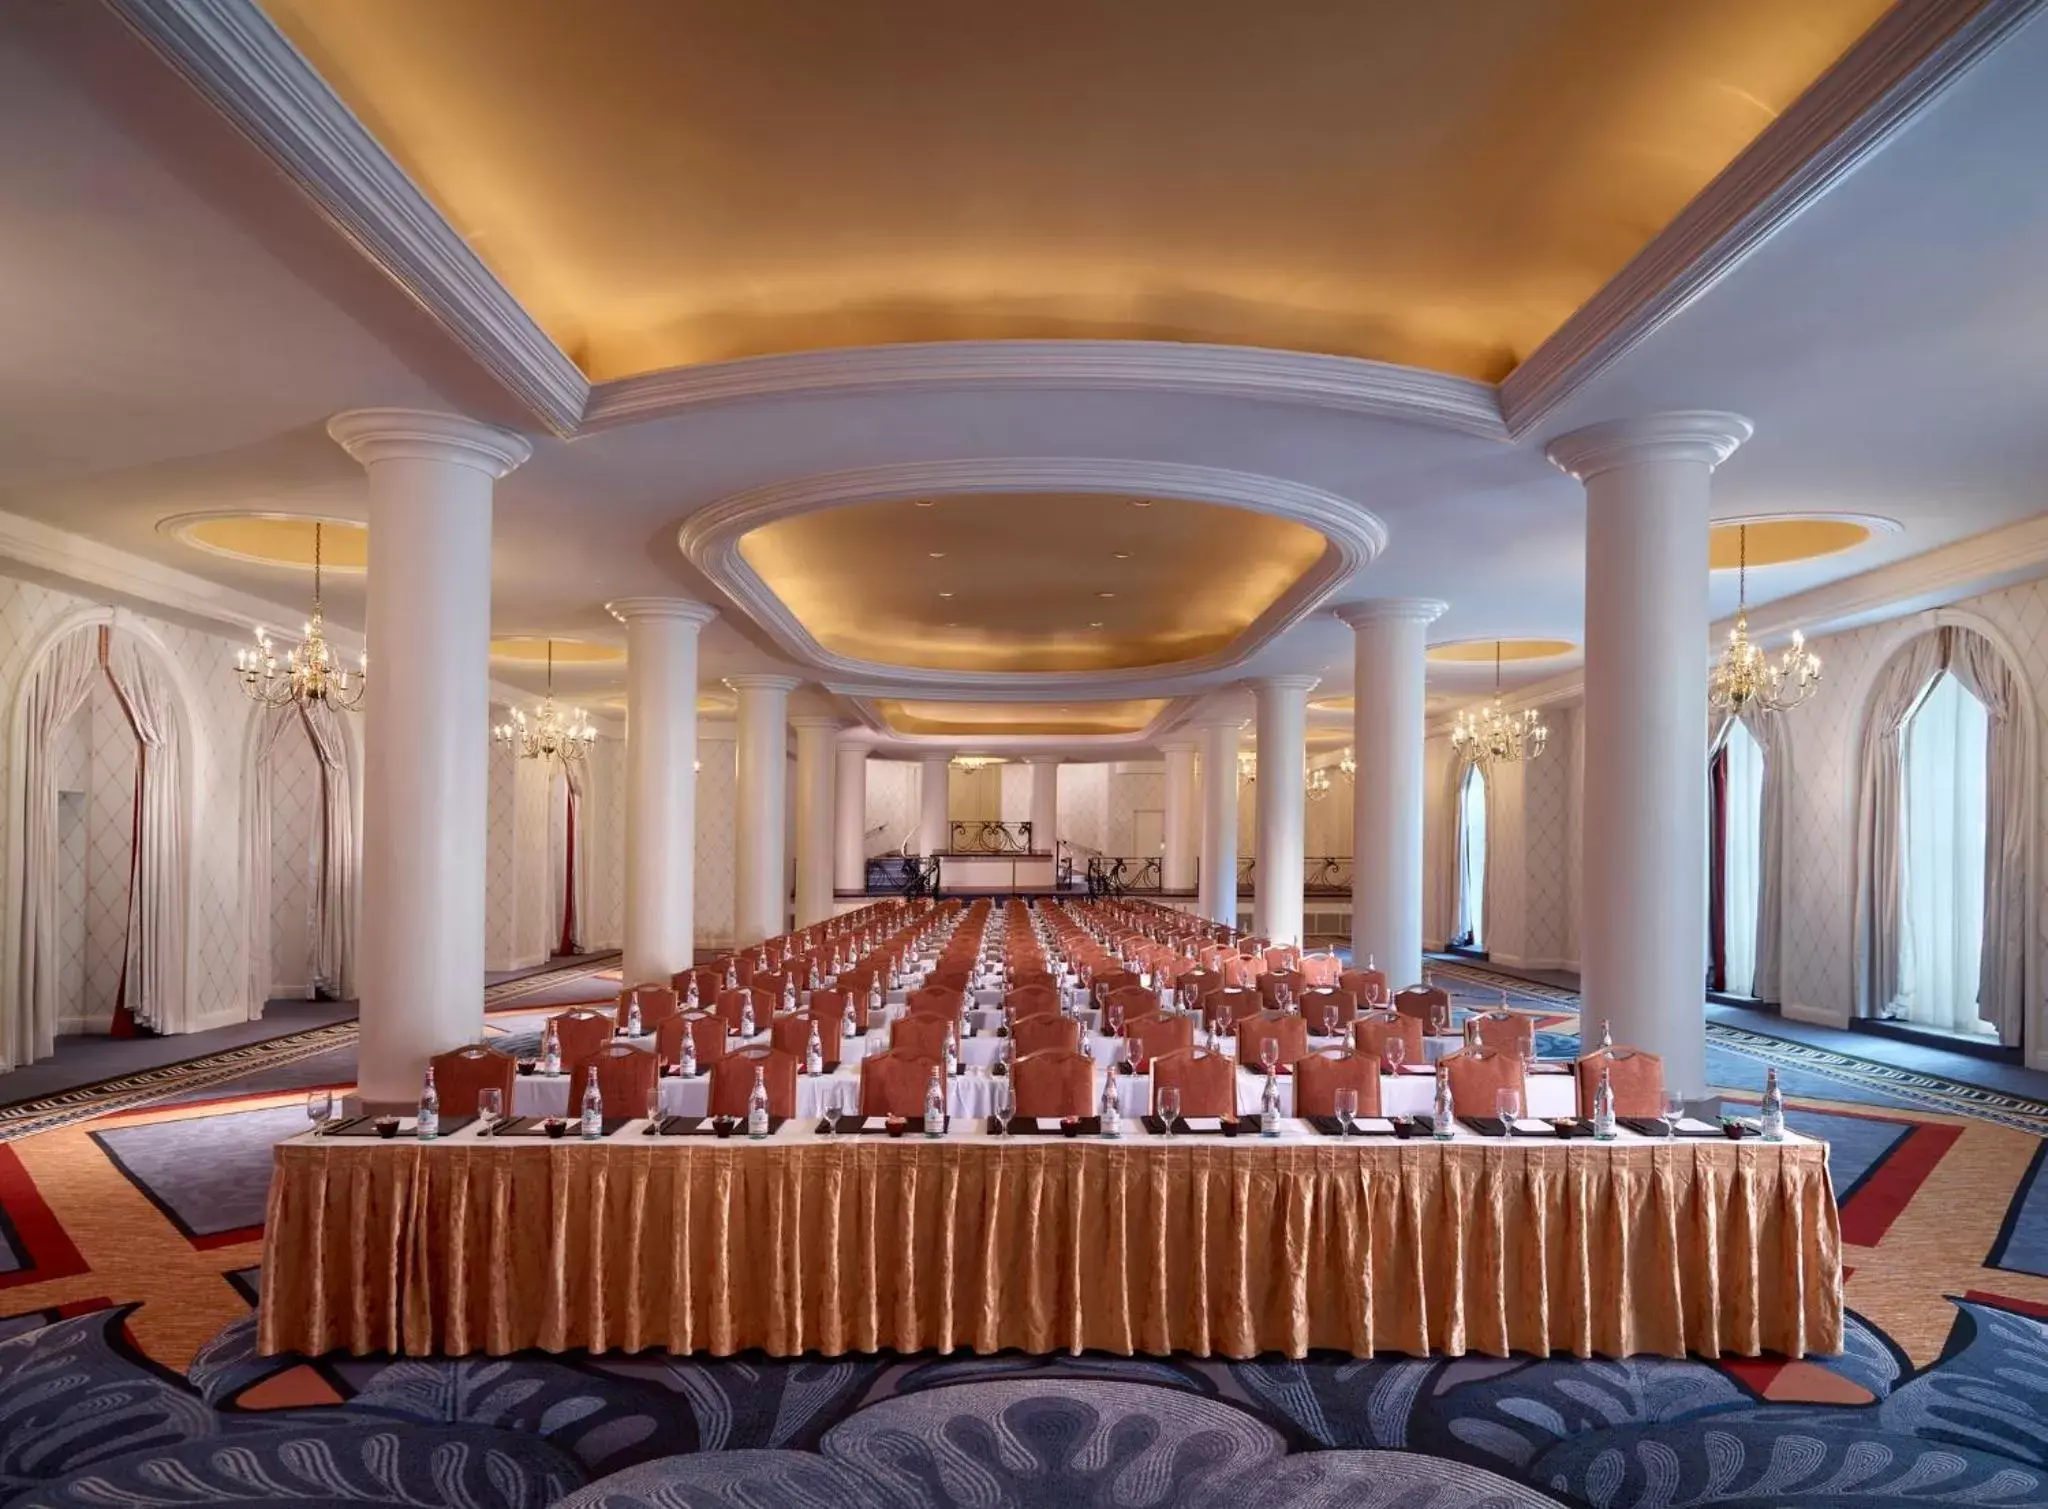 Banquet/Function facilities, Banquet Facilities in Omni Shoreham Hotel